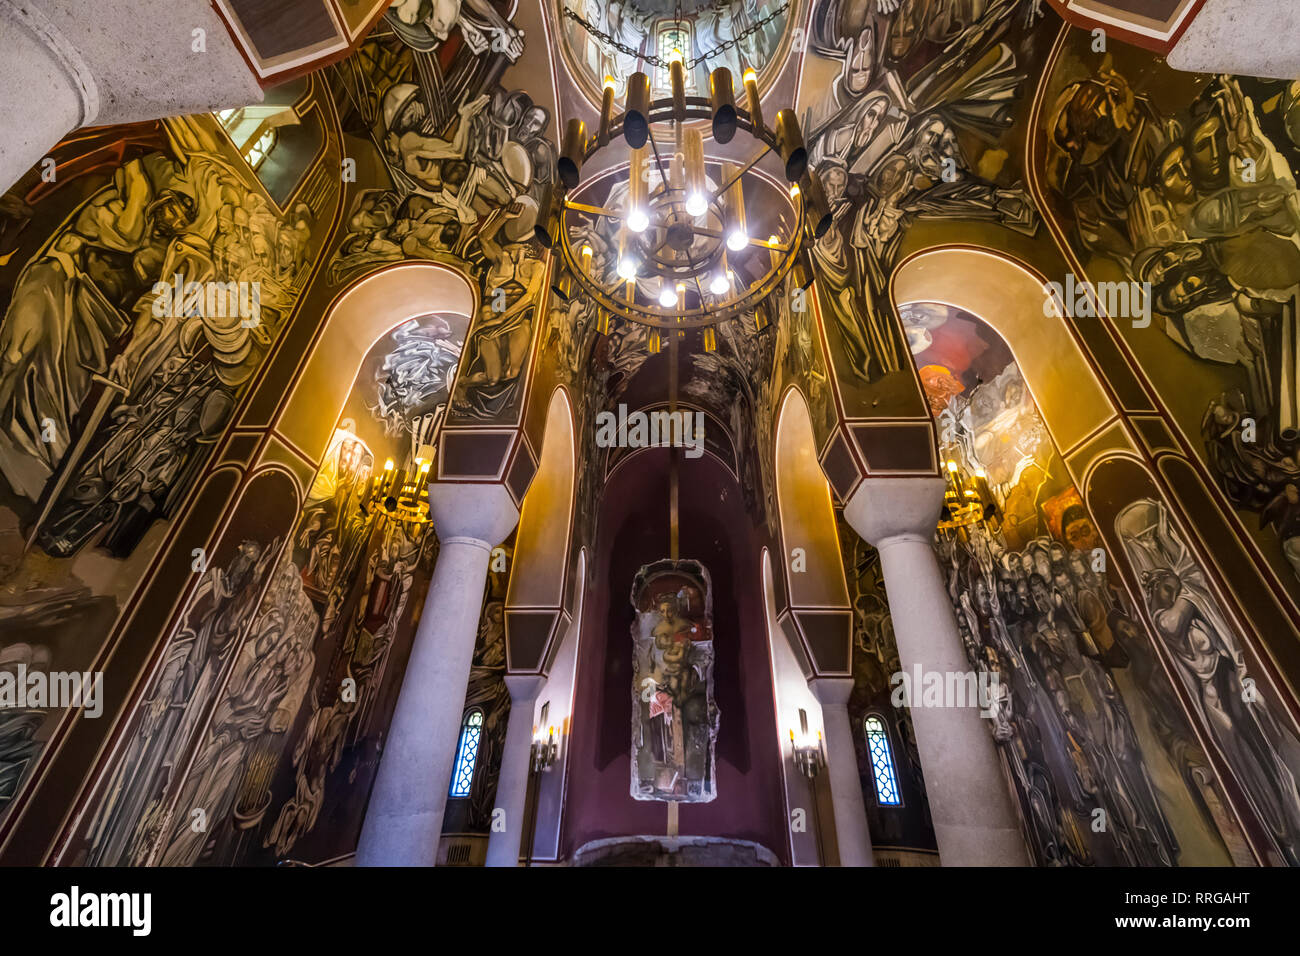 Cathédrale de l'Ascension repeint avec des peintures de style moderniste, Veliko Tarnovo, Bulgarie, Europe Banque D'Images